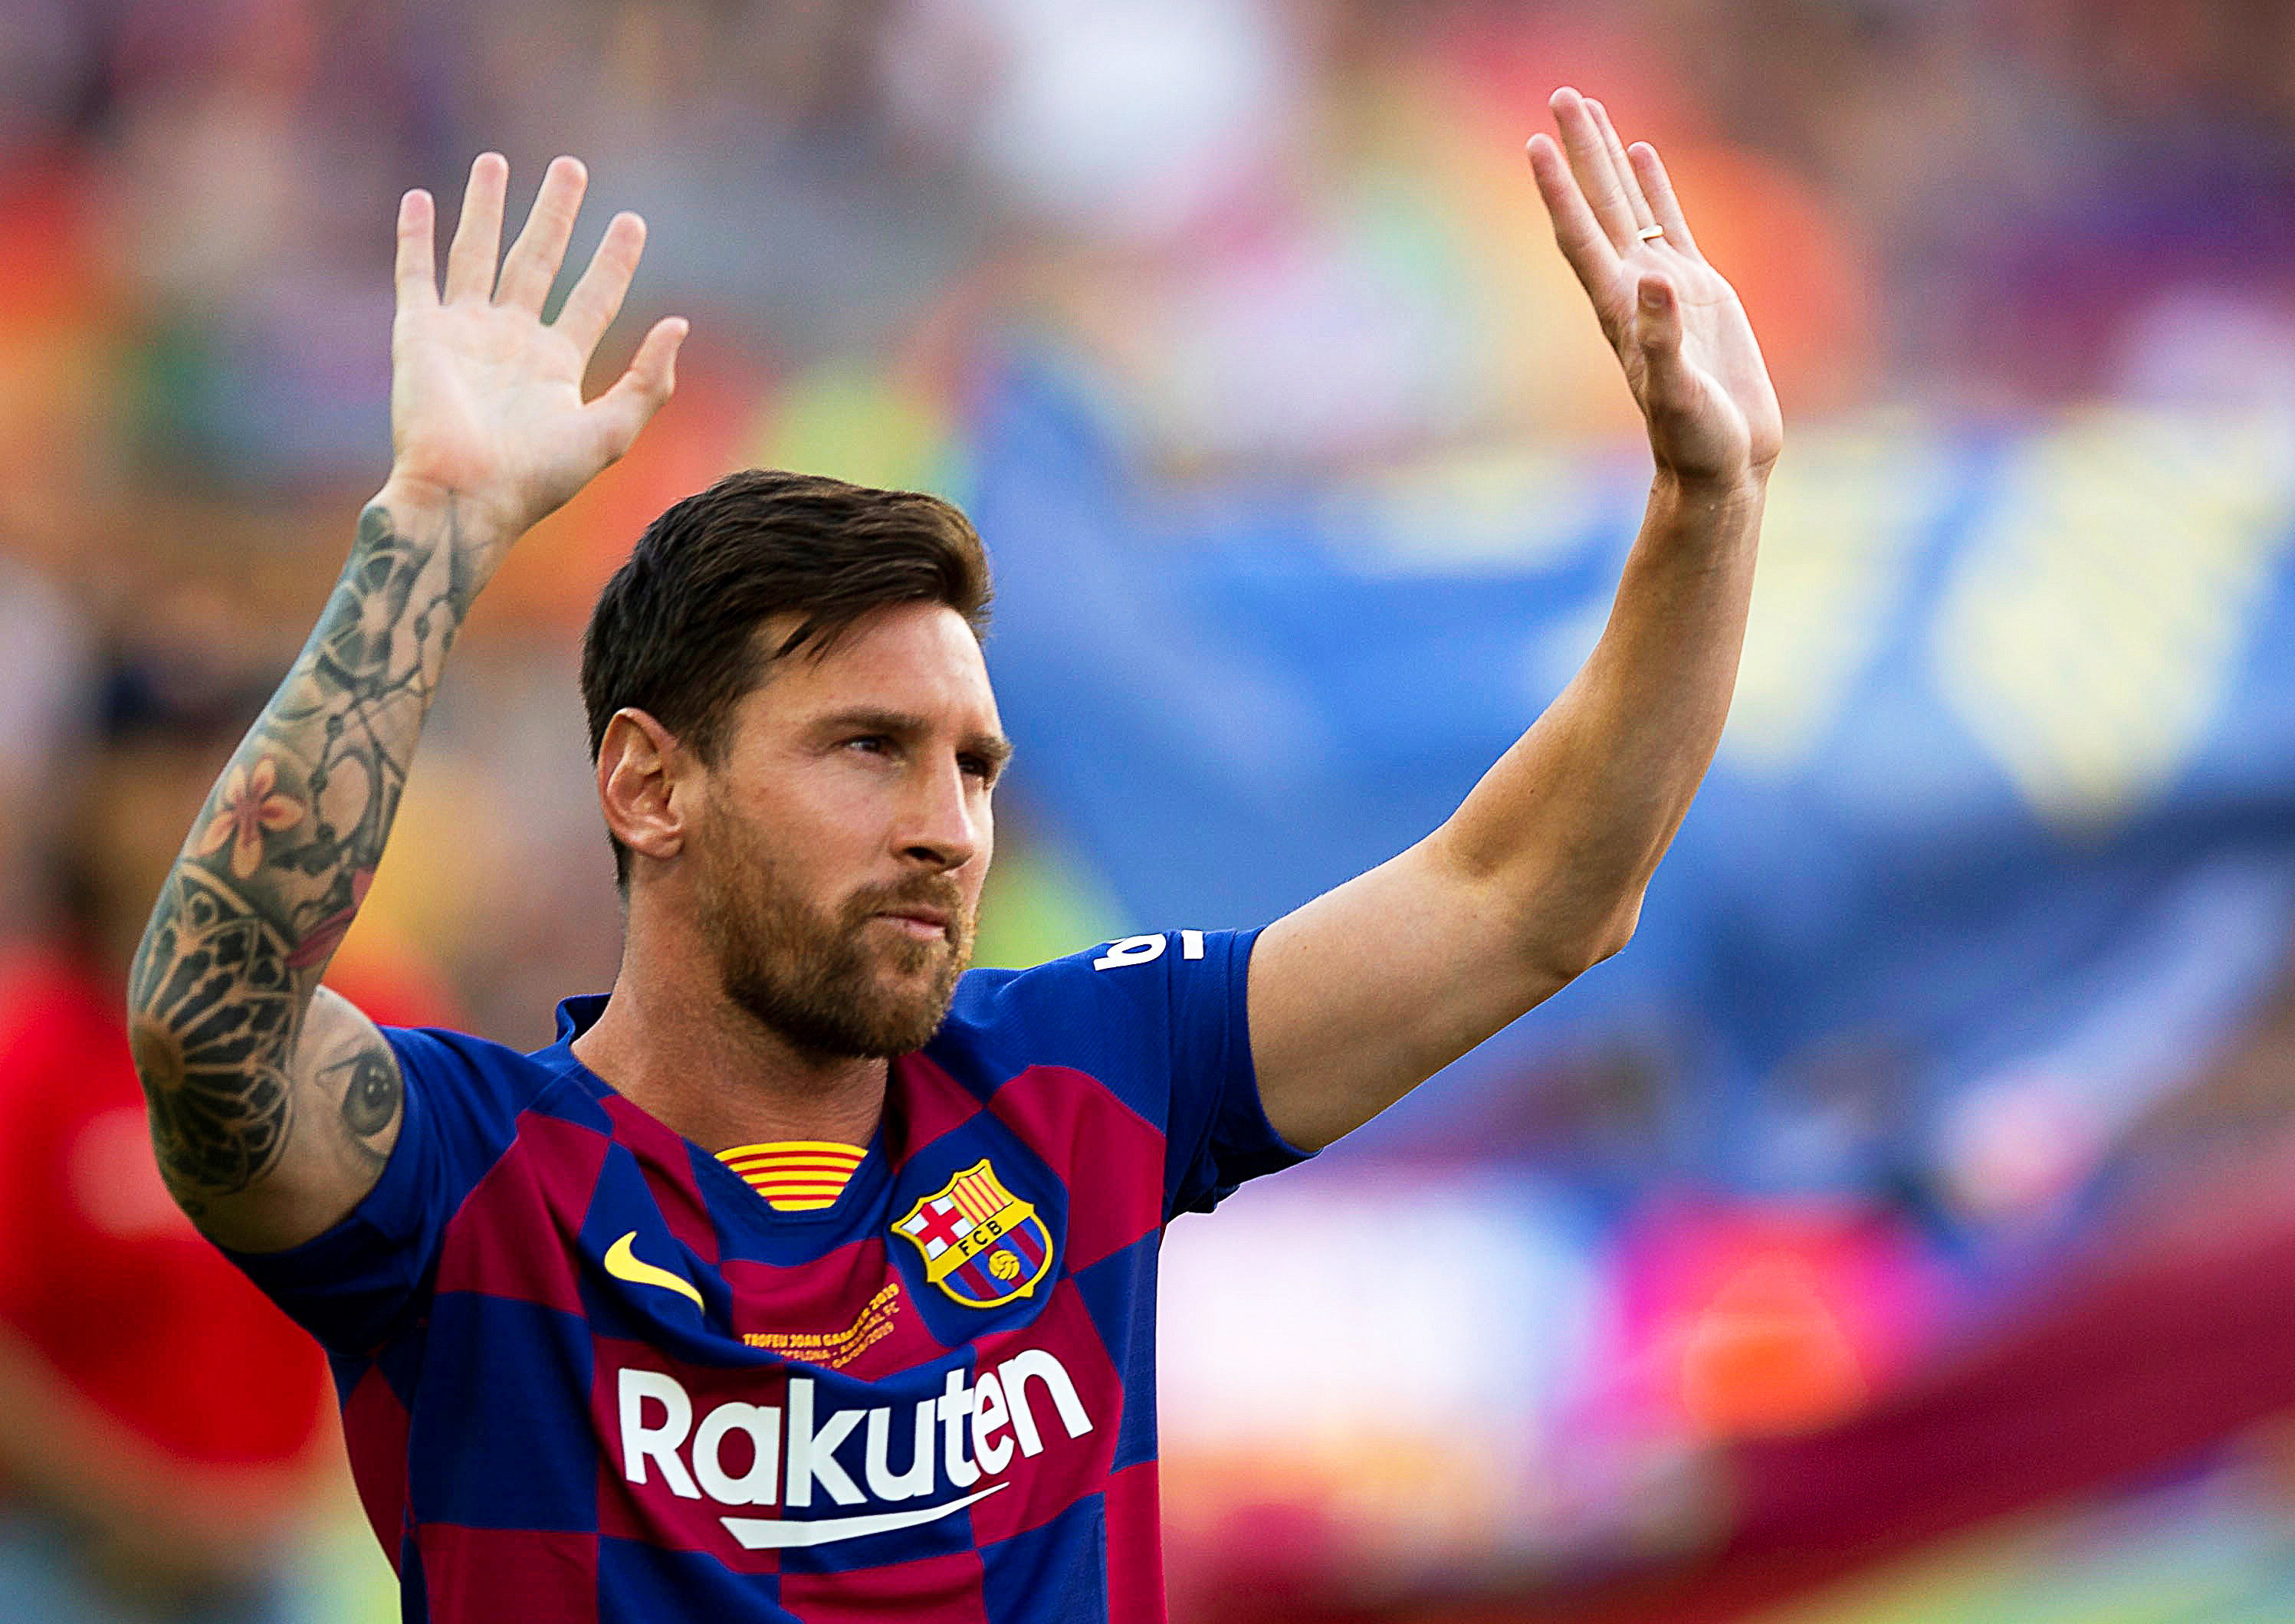 Hálás vagyok mindenkinek” – Videó a könnyeivel küzdő Messiről: zokogva  jelentette be a Barcelonától való távozását - Sportal.hu